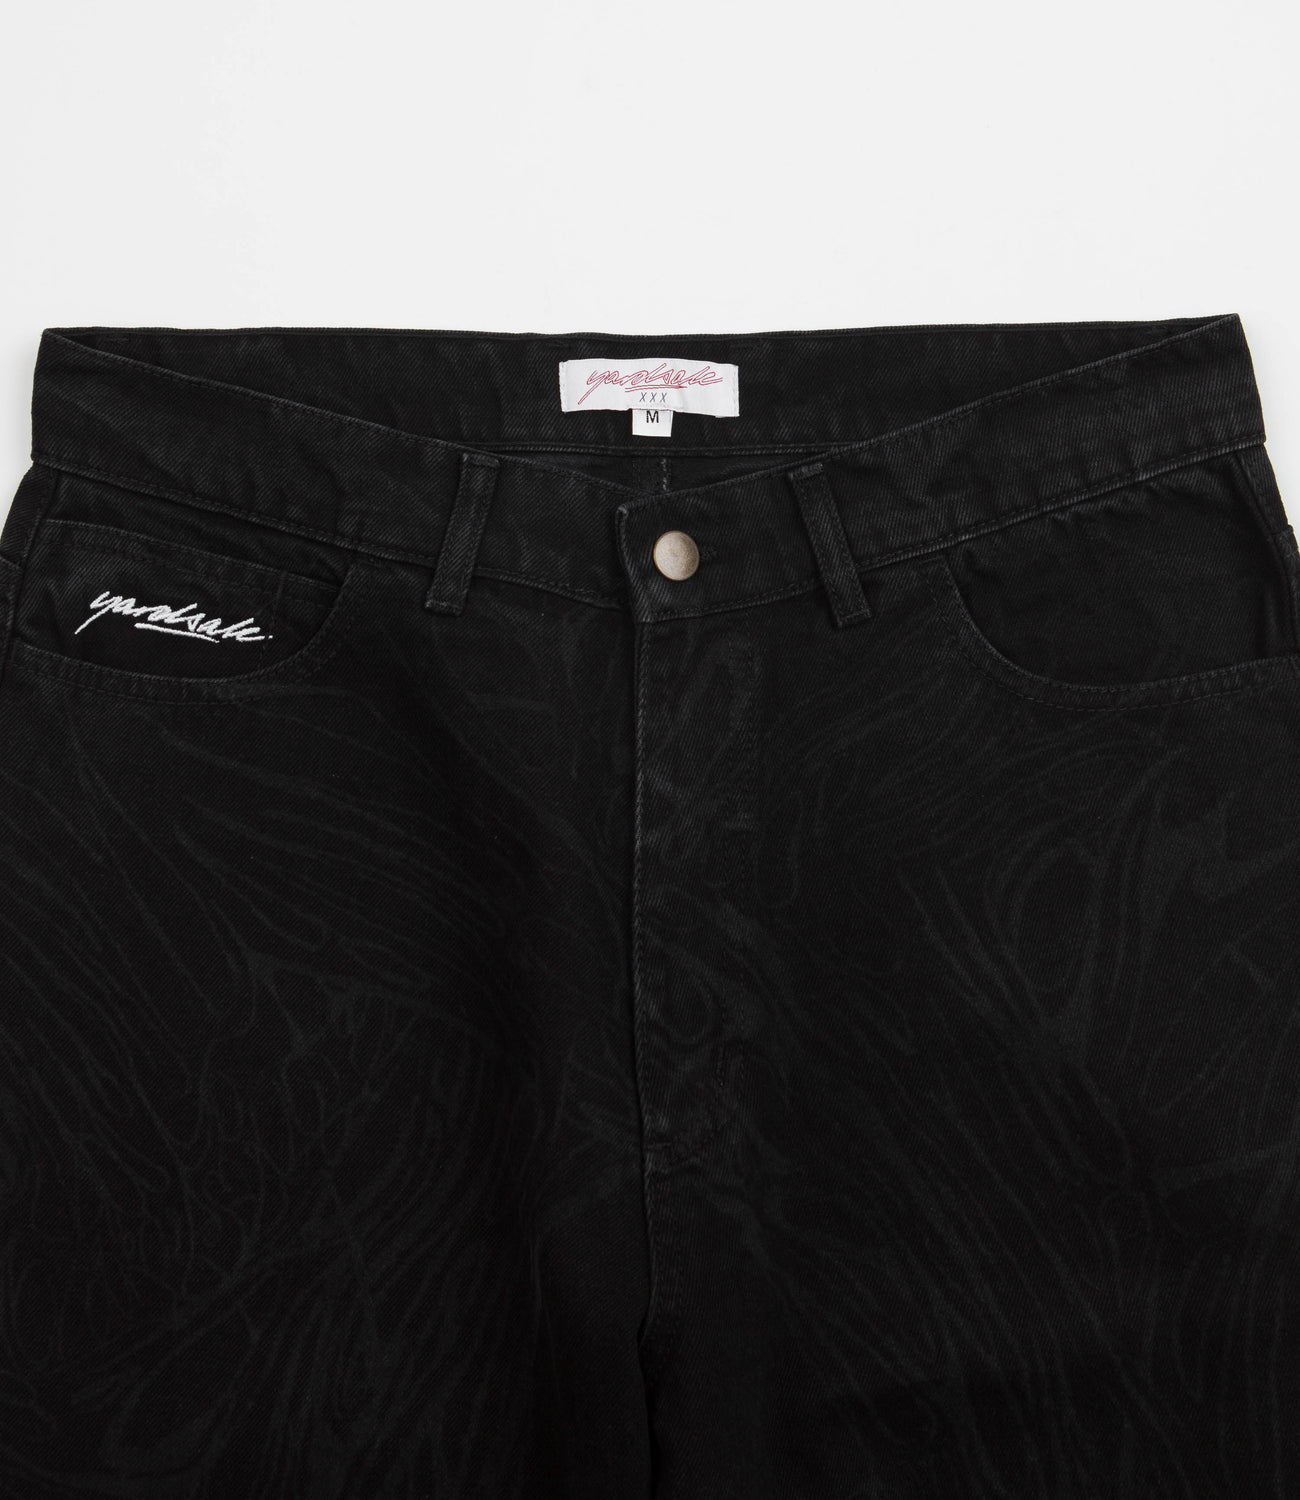 大阪直営店 Yardsale Phantasy Jeans black M 男女兼用 - パンツ